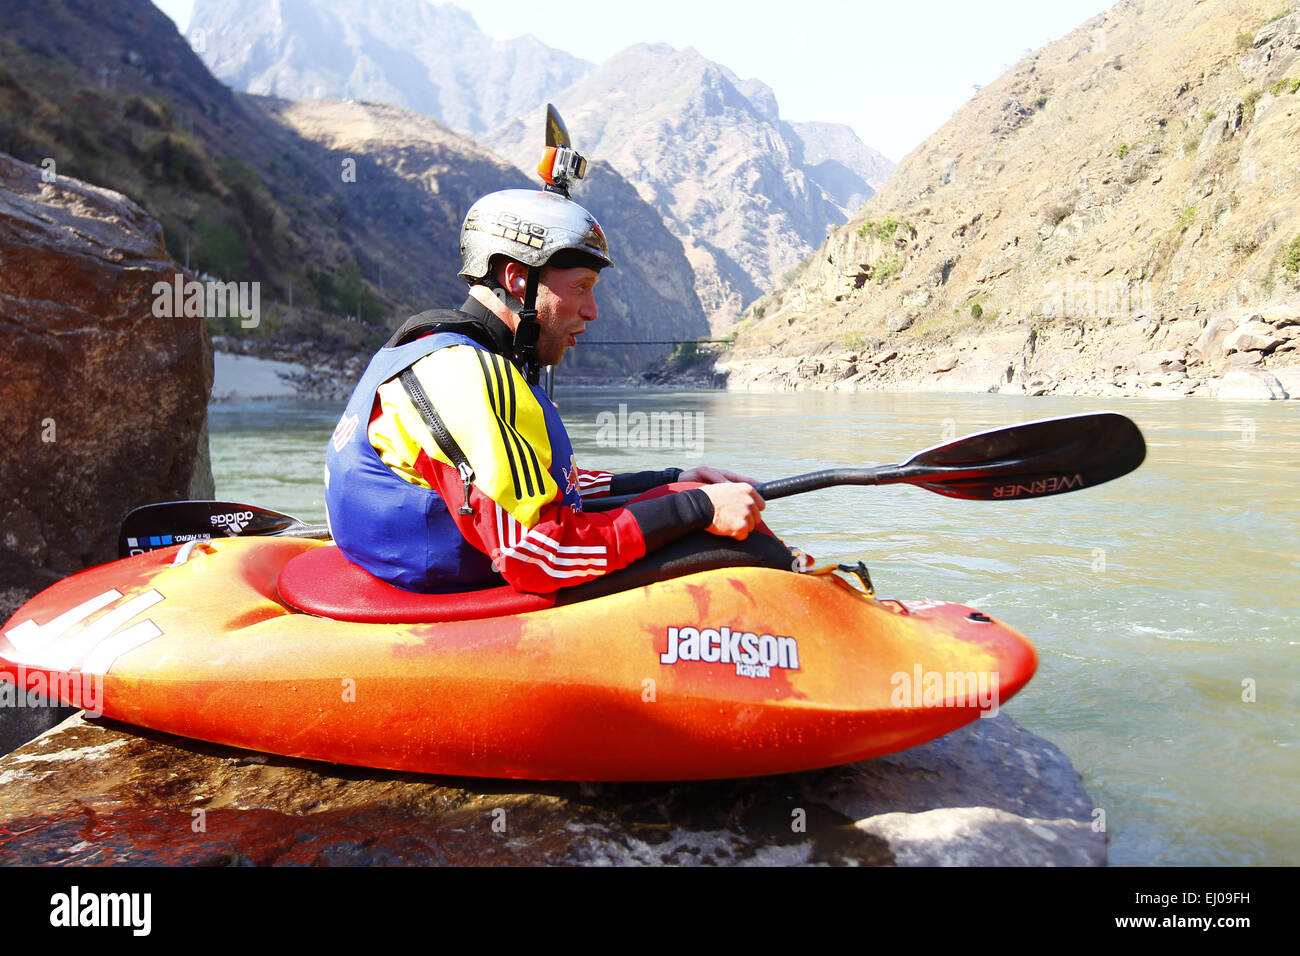 Nujiang, la Provincia china de Yunnan. 19 Mar, 2015. Mundo kayak canoa y  Freestyle Champion Nick Troutman aclamaciones por su cuñado, el Dane  Jackson de los Estados Unidos durante la sesión de